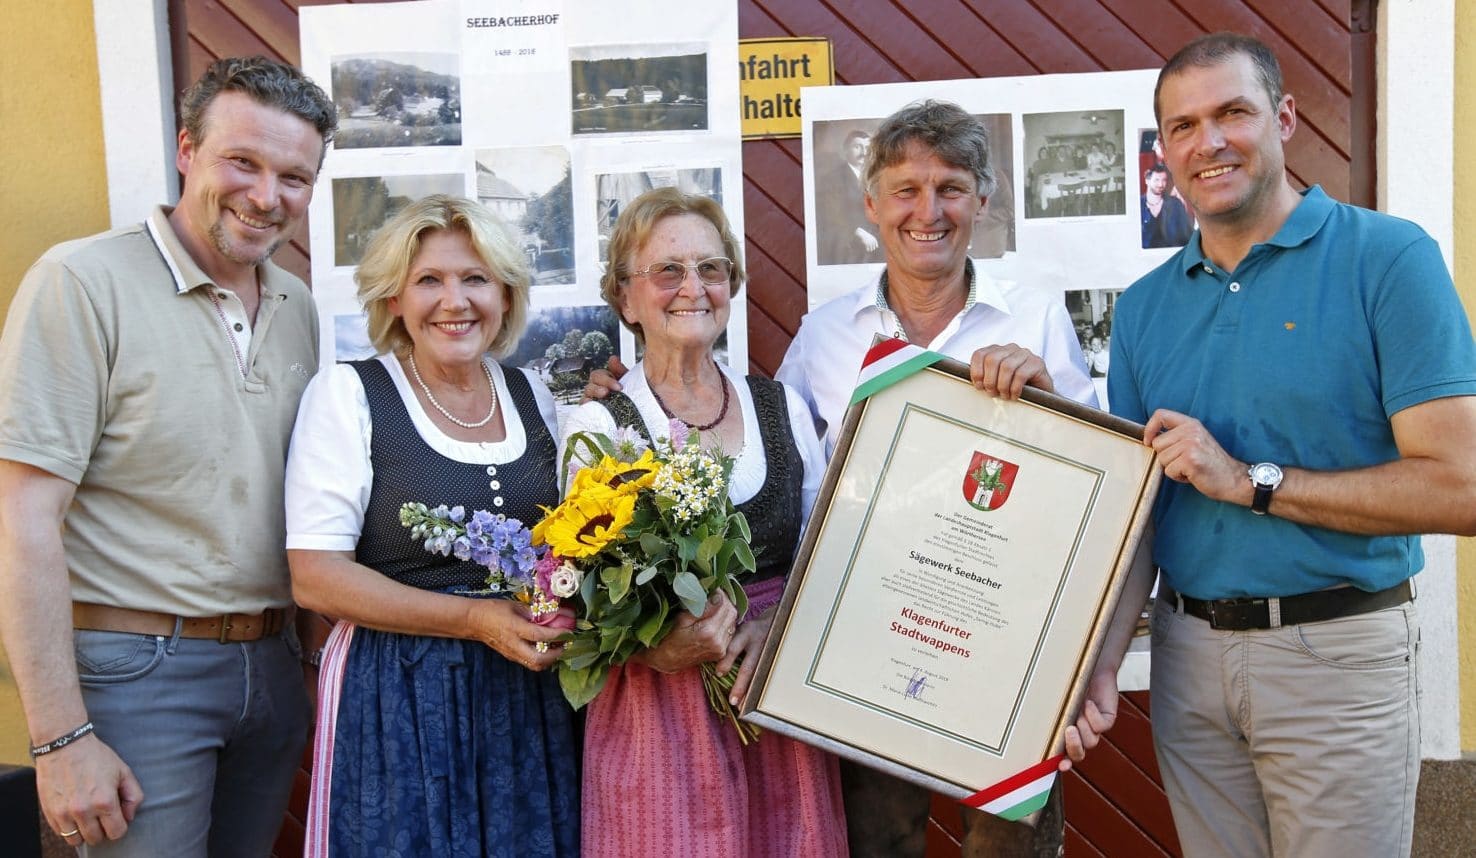 Wolfgang Germ, Maria Luise Mathiaschitz, Mutter Seebacher, Seebacher und Markus Geiger